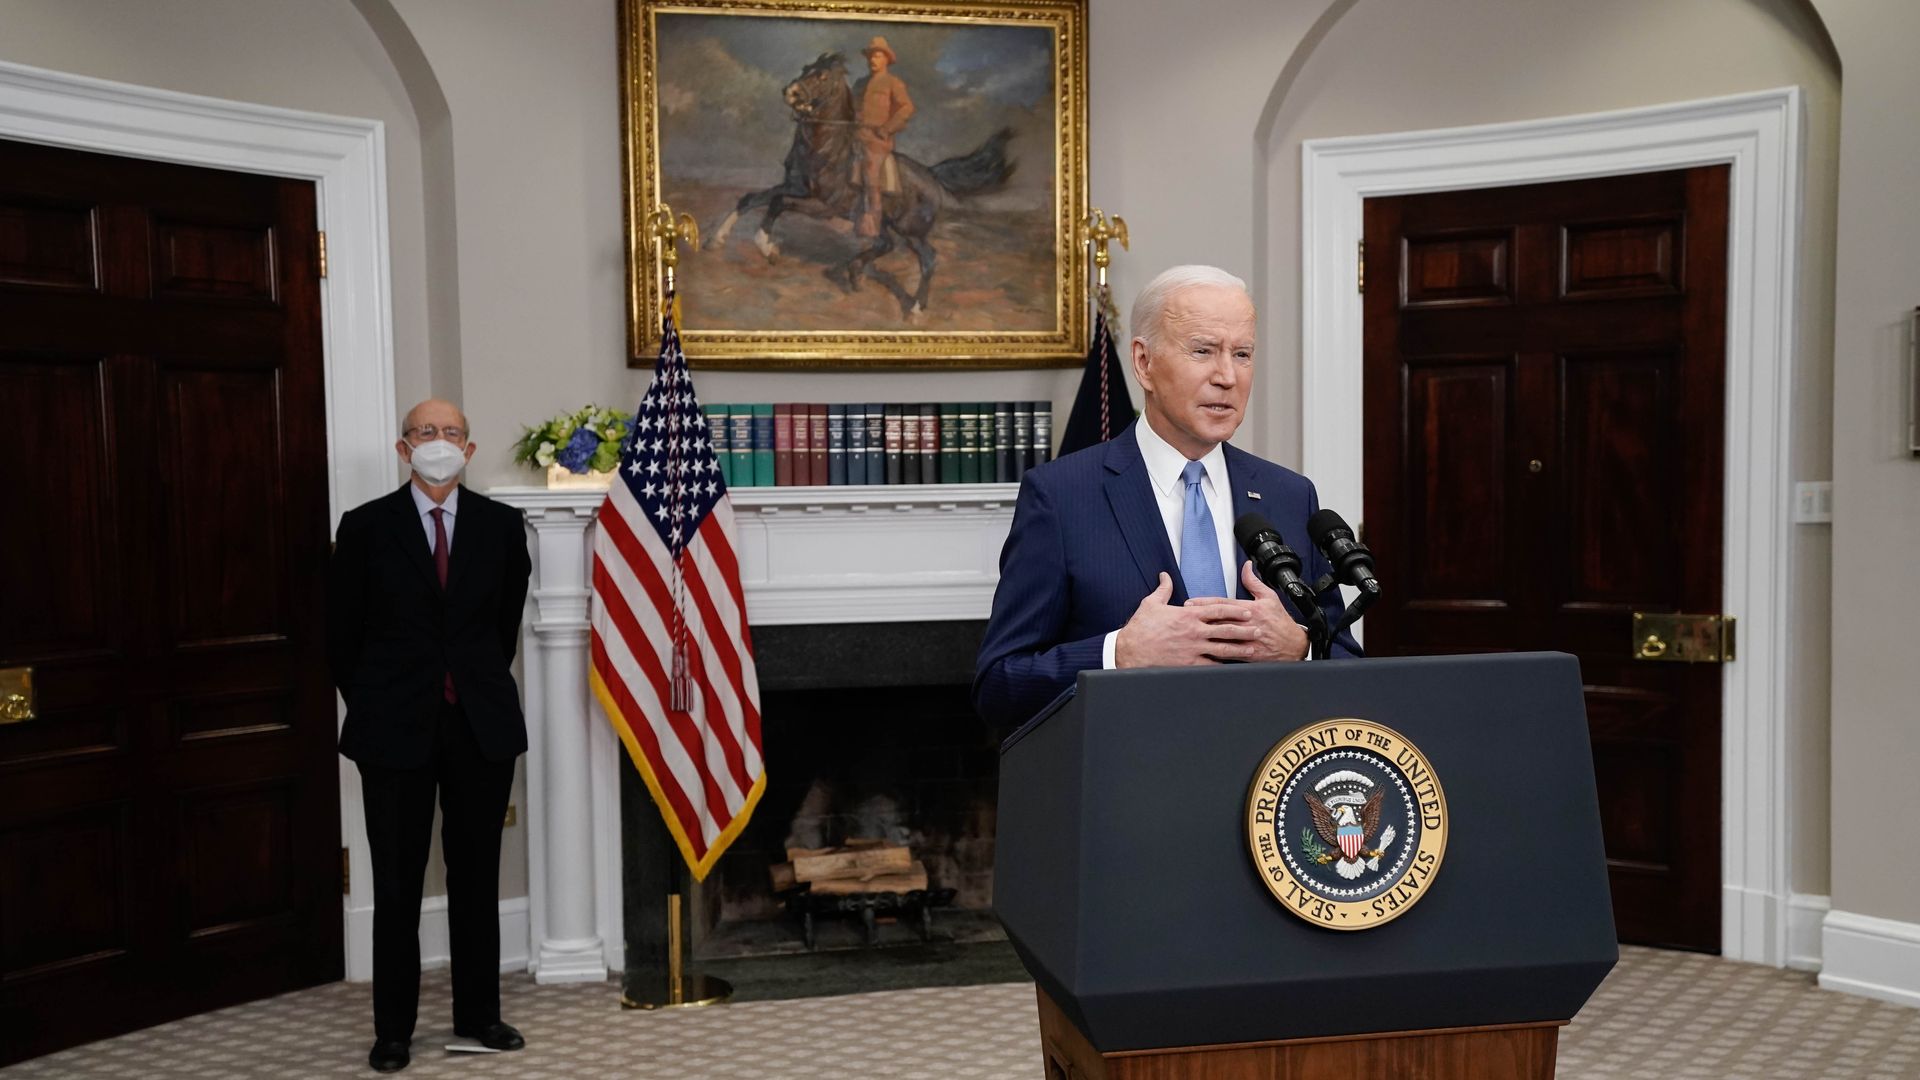 President Joe Biden speaks on the retirement of Supreme Court Associate Justice Stephen Breyer, left, in the Roosevelt Room of the White House in Washington, D.C., U.S., on Thursday, Jan. 27, 2022